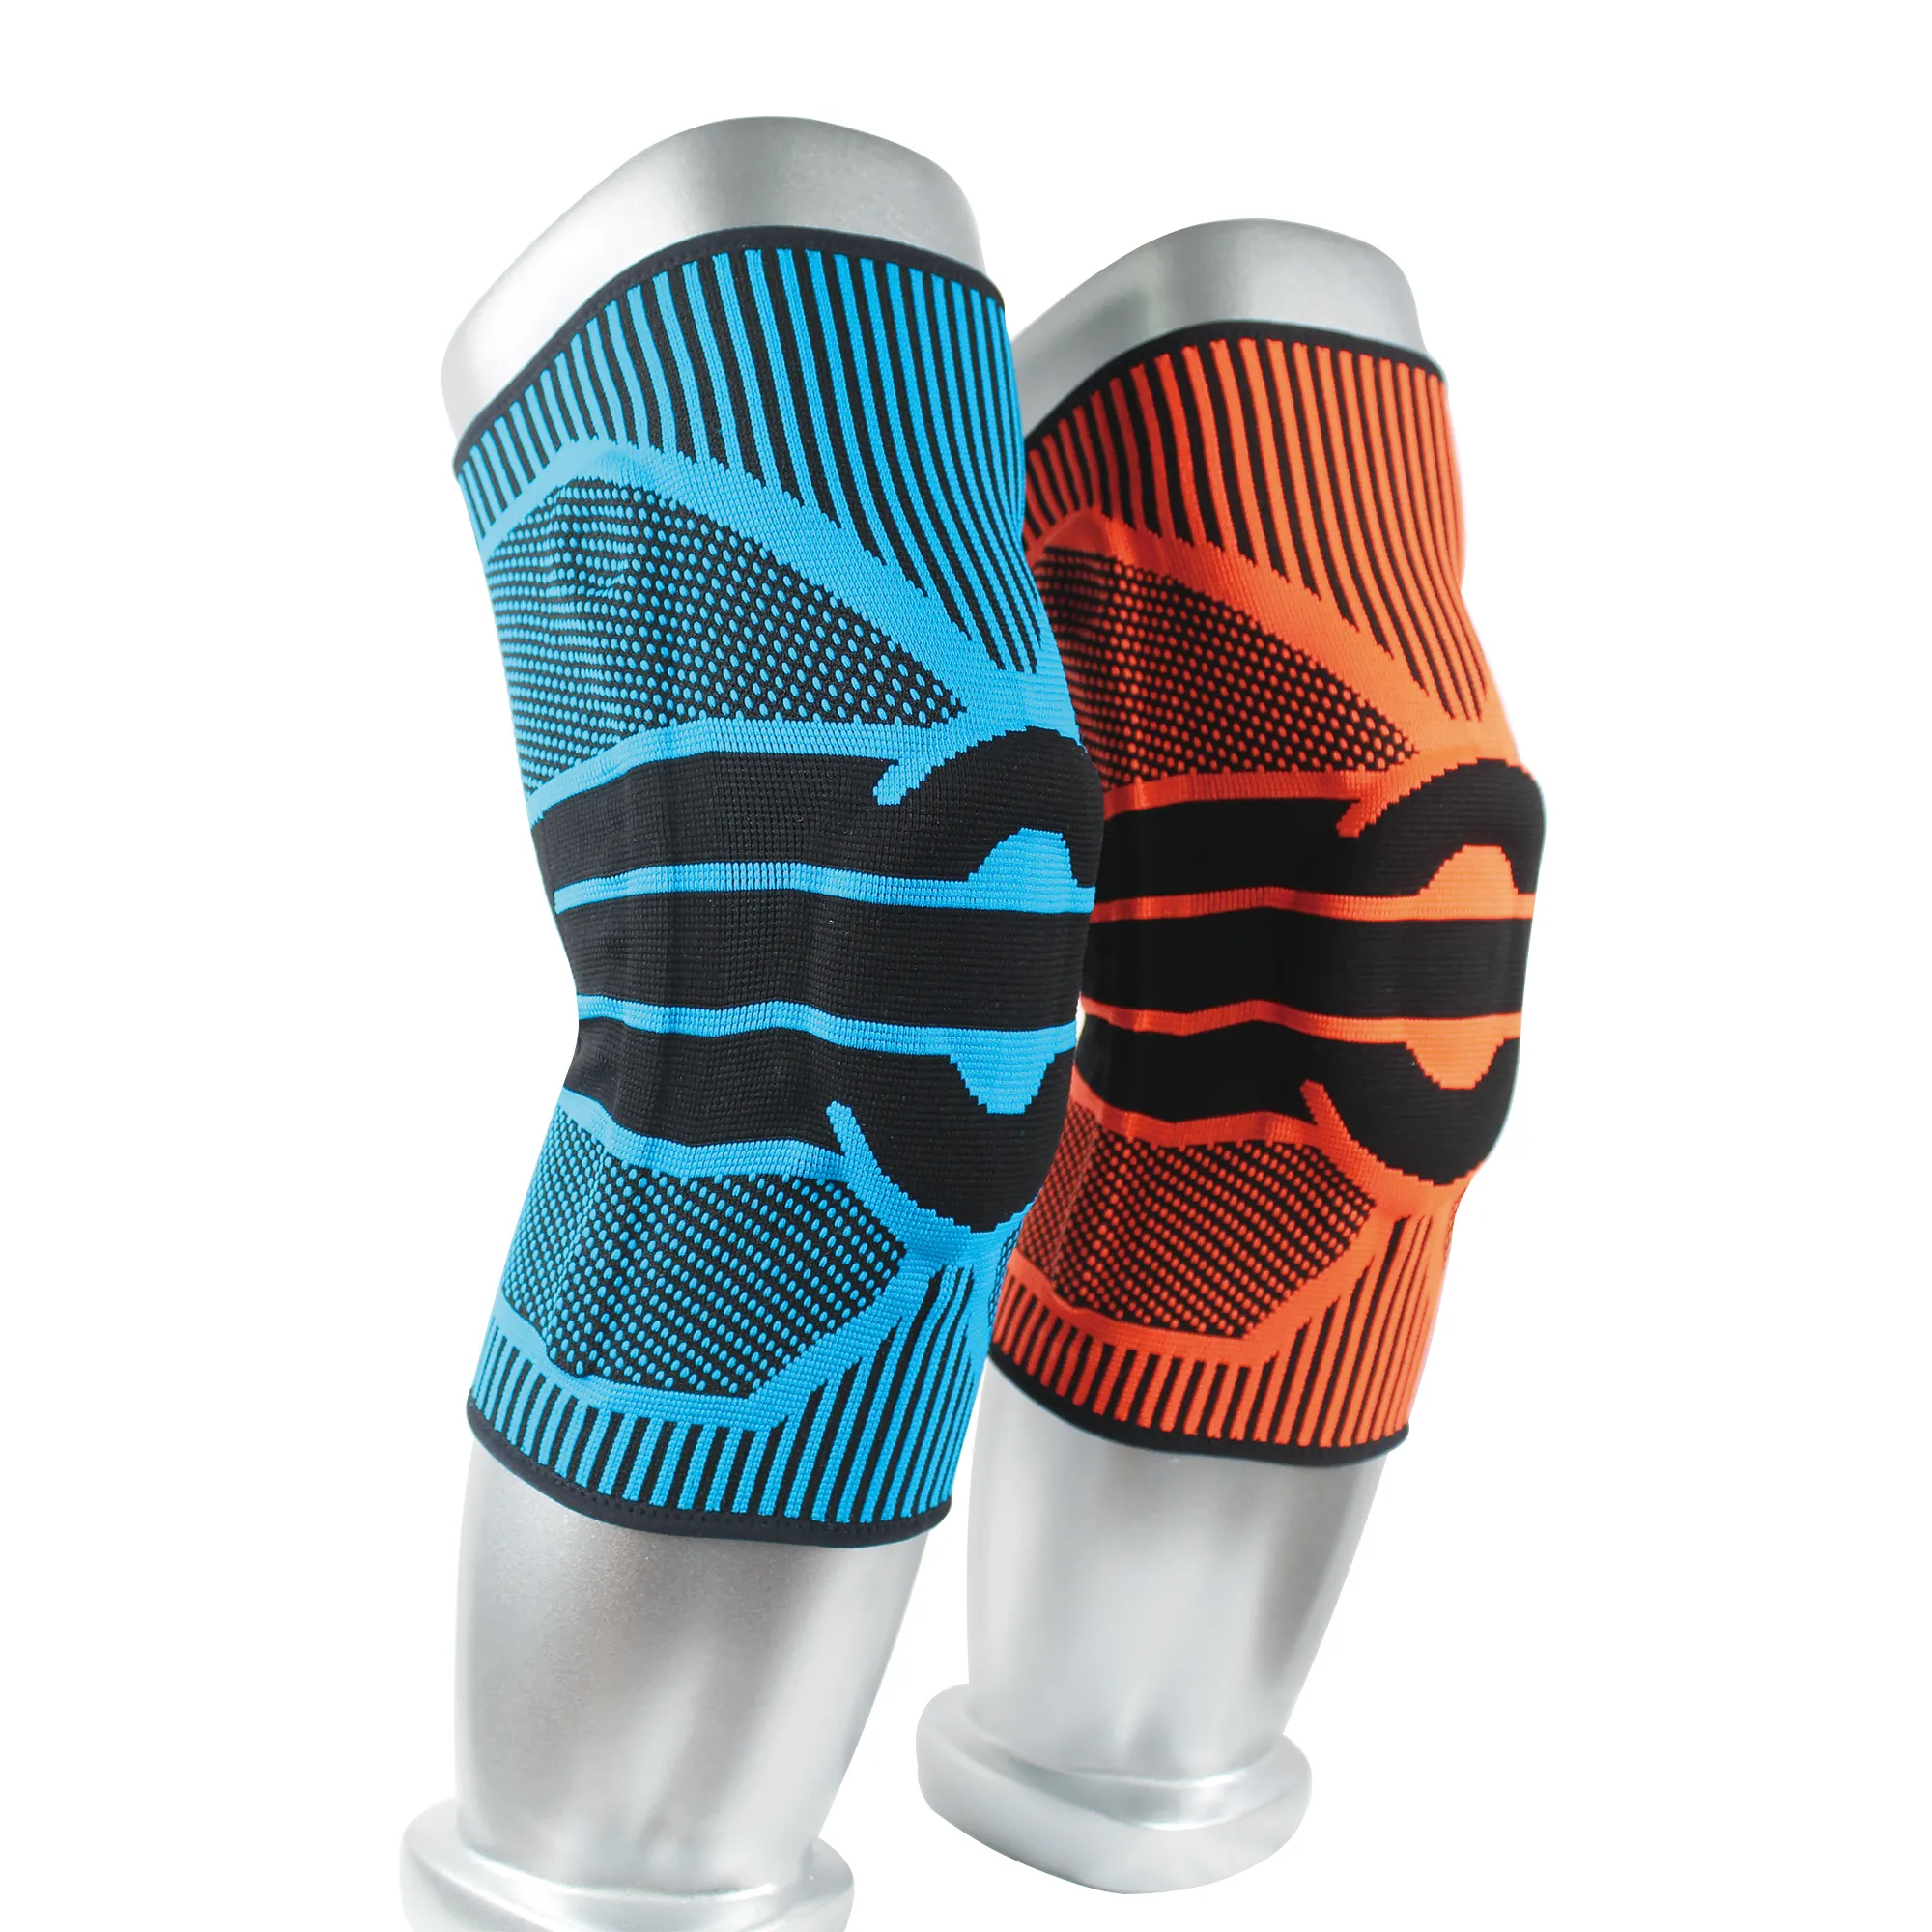 Новый Фитнес Спортивные наколенники Йога Поддержка коленного бандажа защиты наколенники Rodilleras Para Moto тренировки компрессионный бандаж на колено